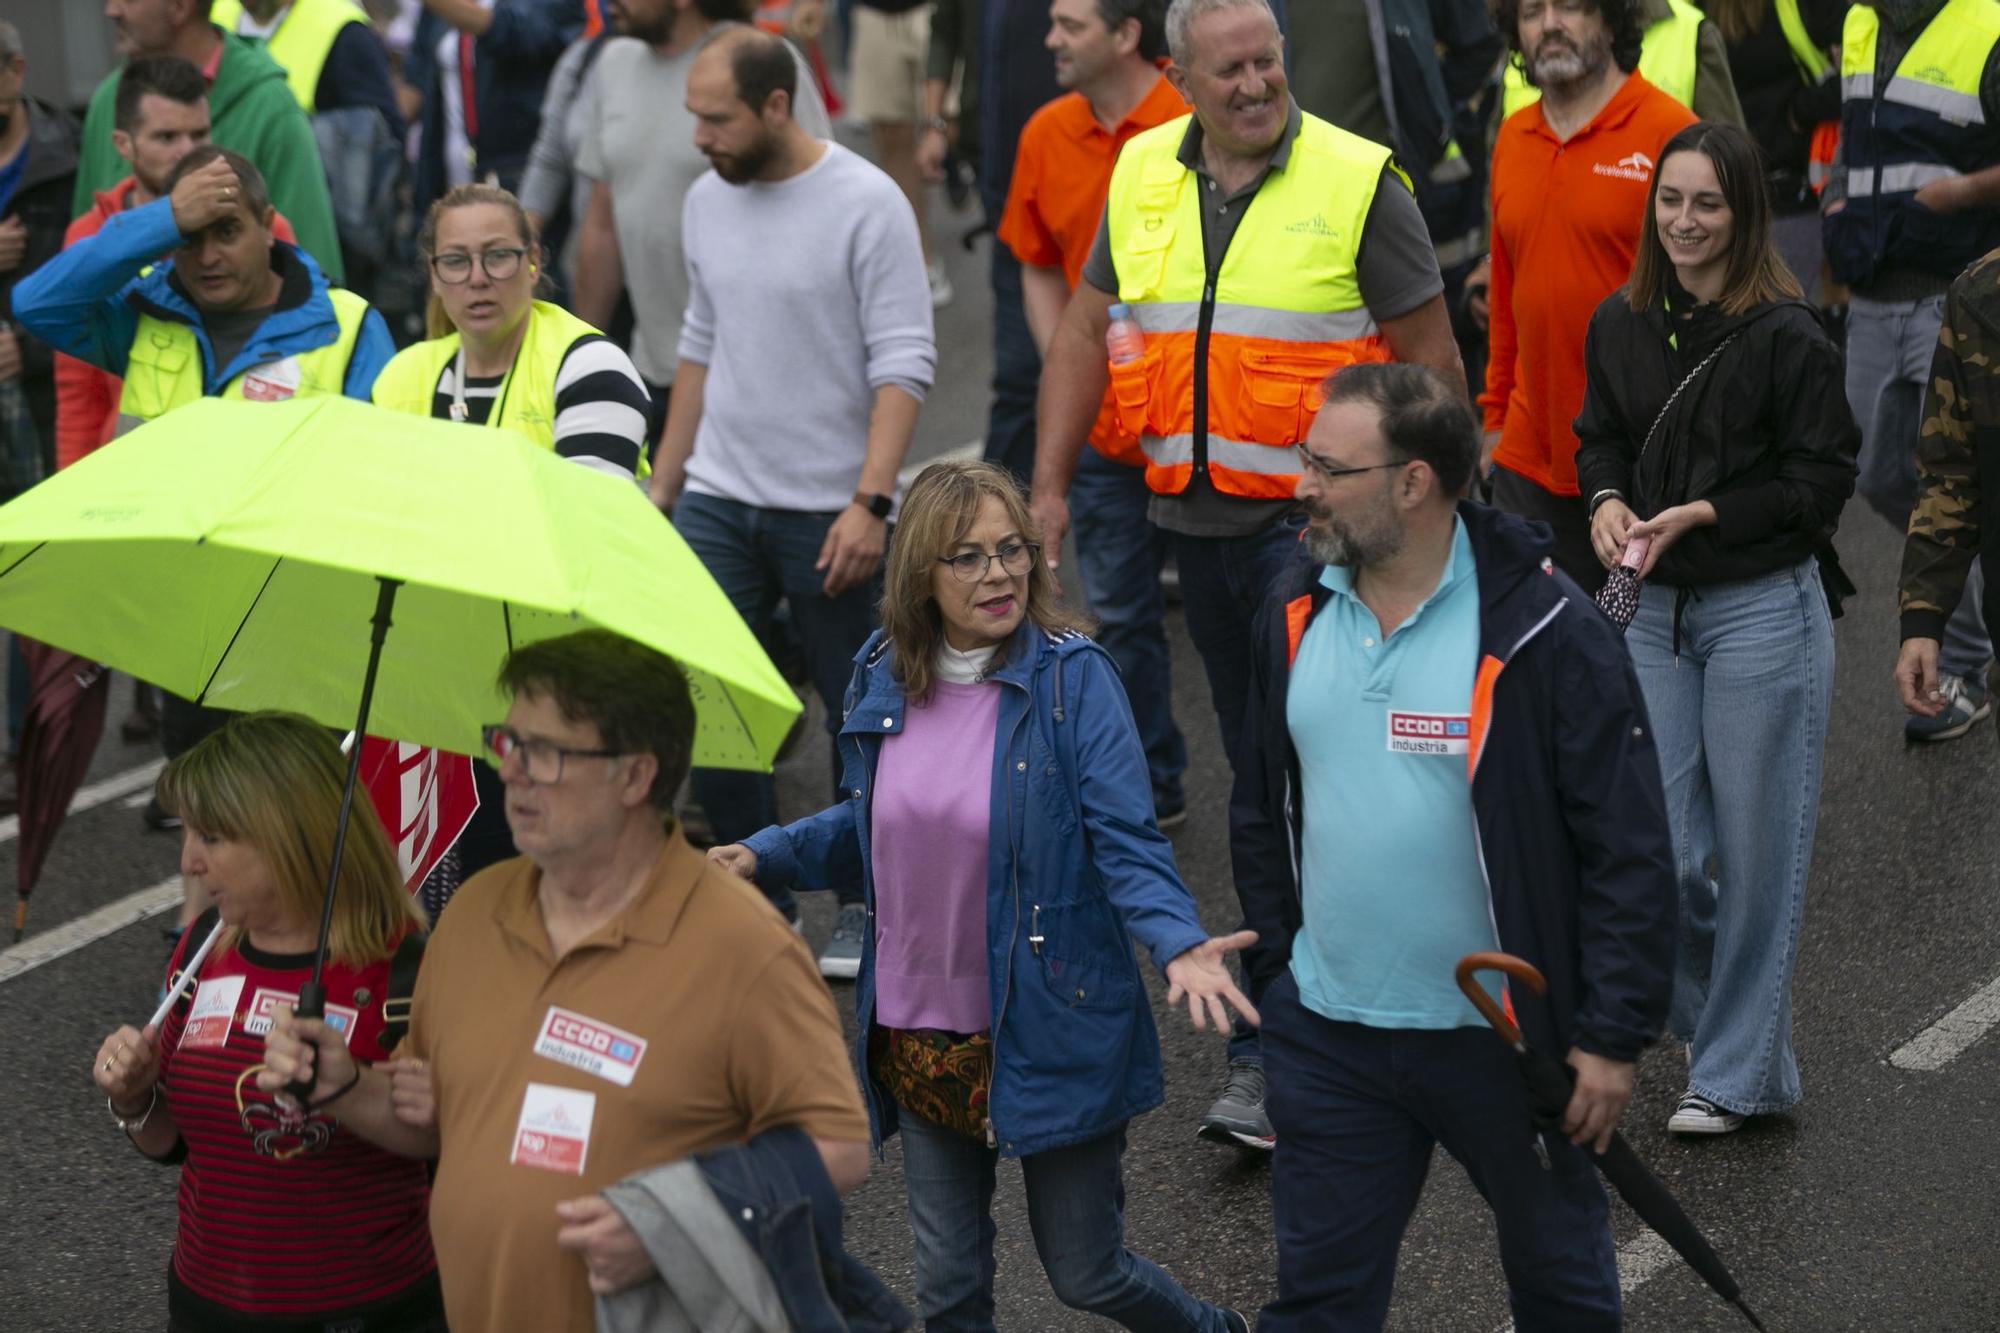 EN IMÁGENES: así transcurrió la marcha de los trabajadores de Saint-Gobain